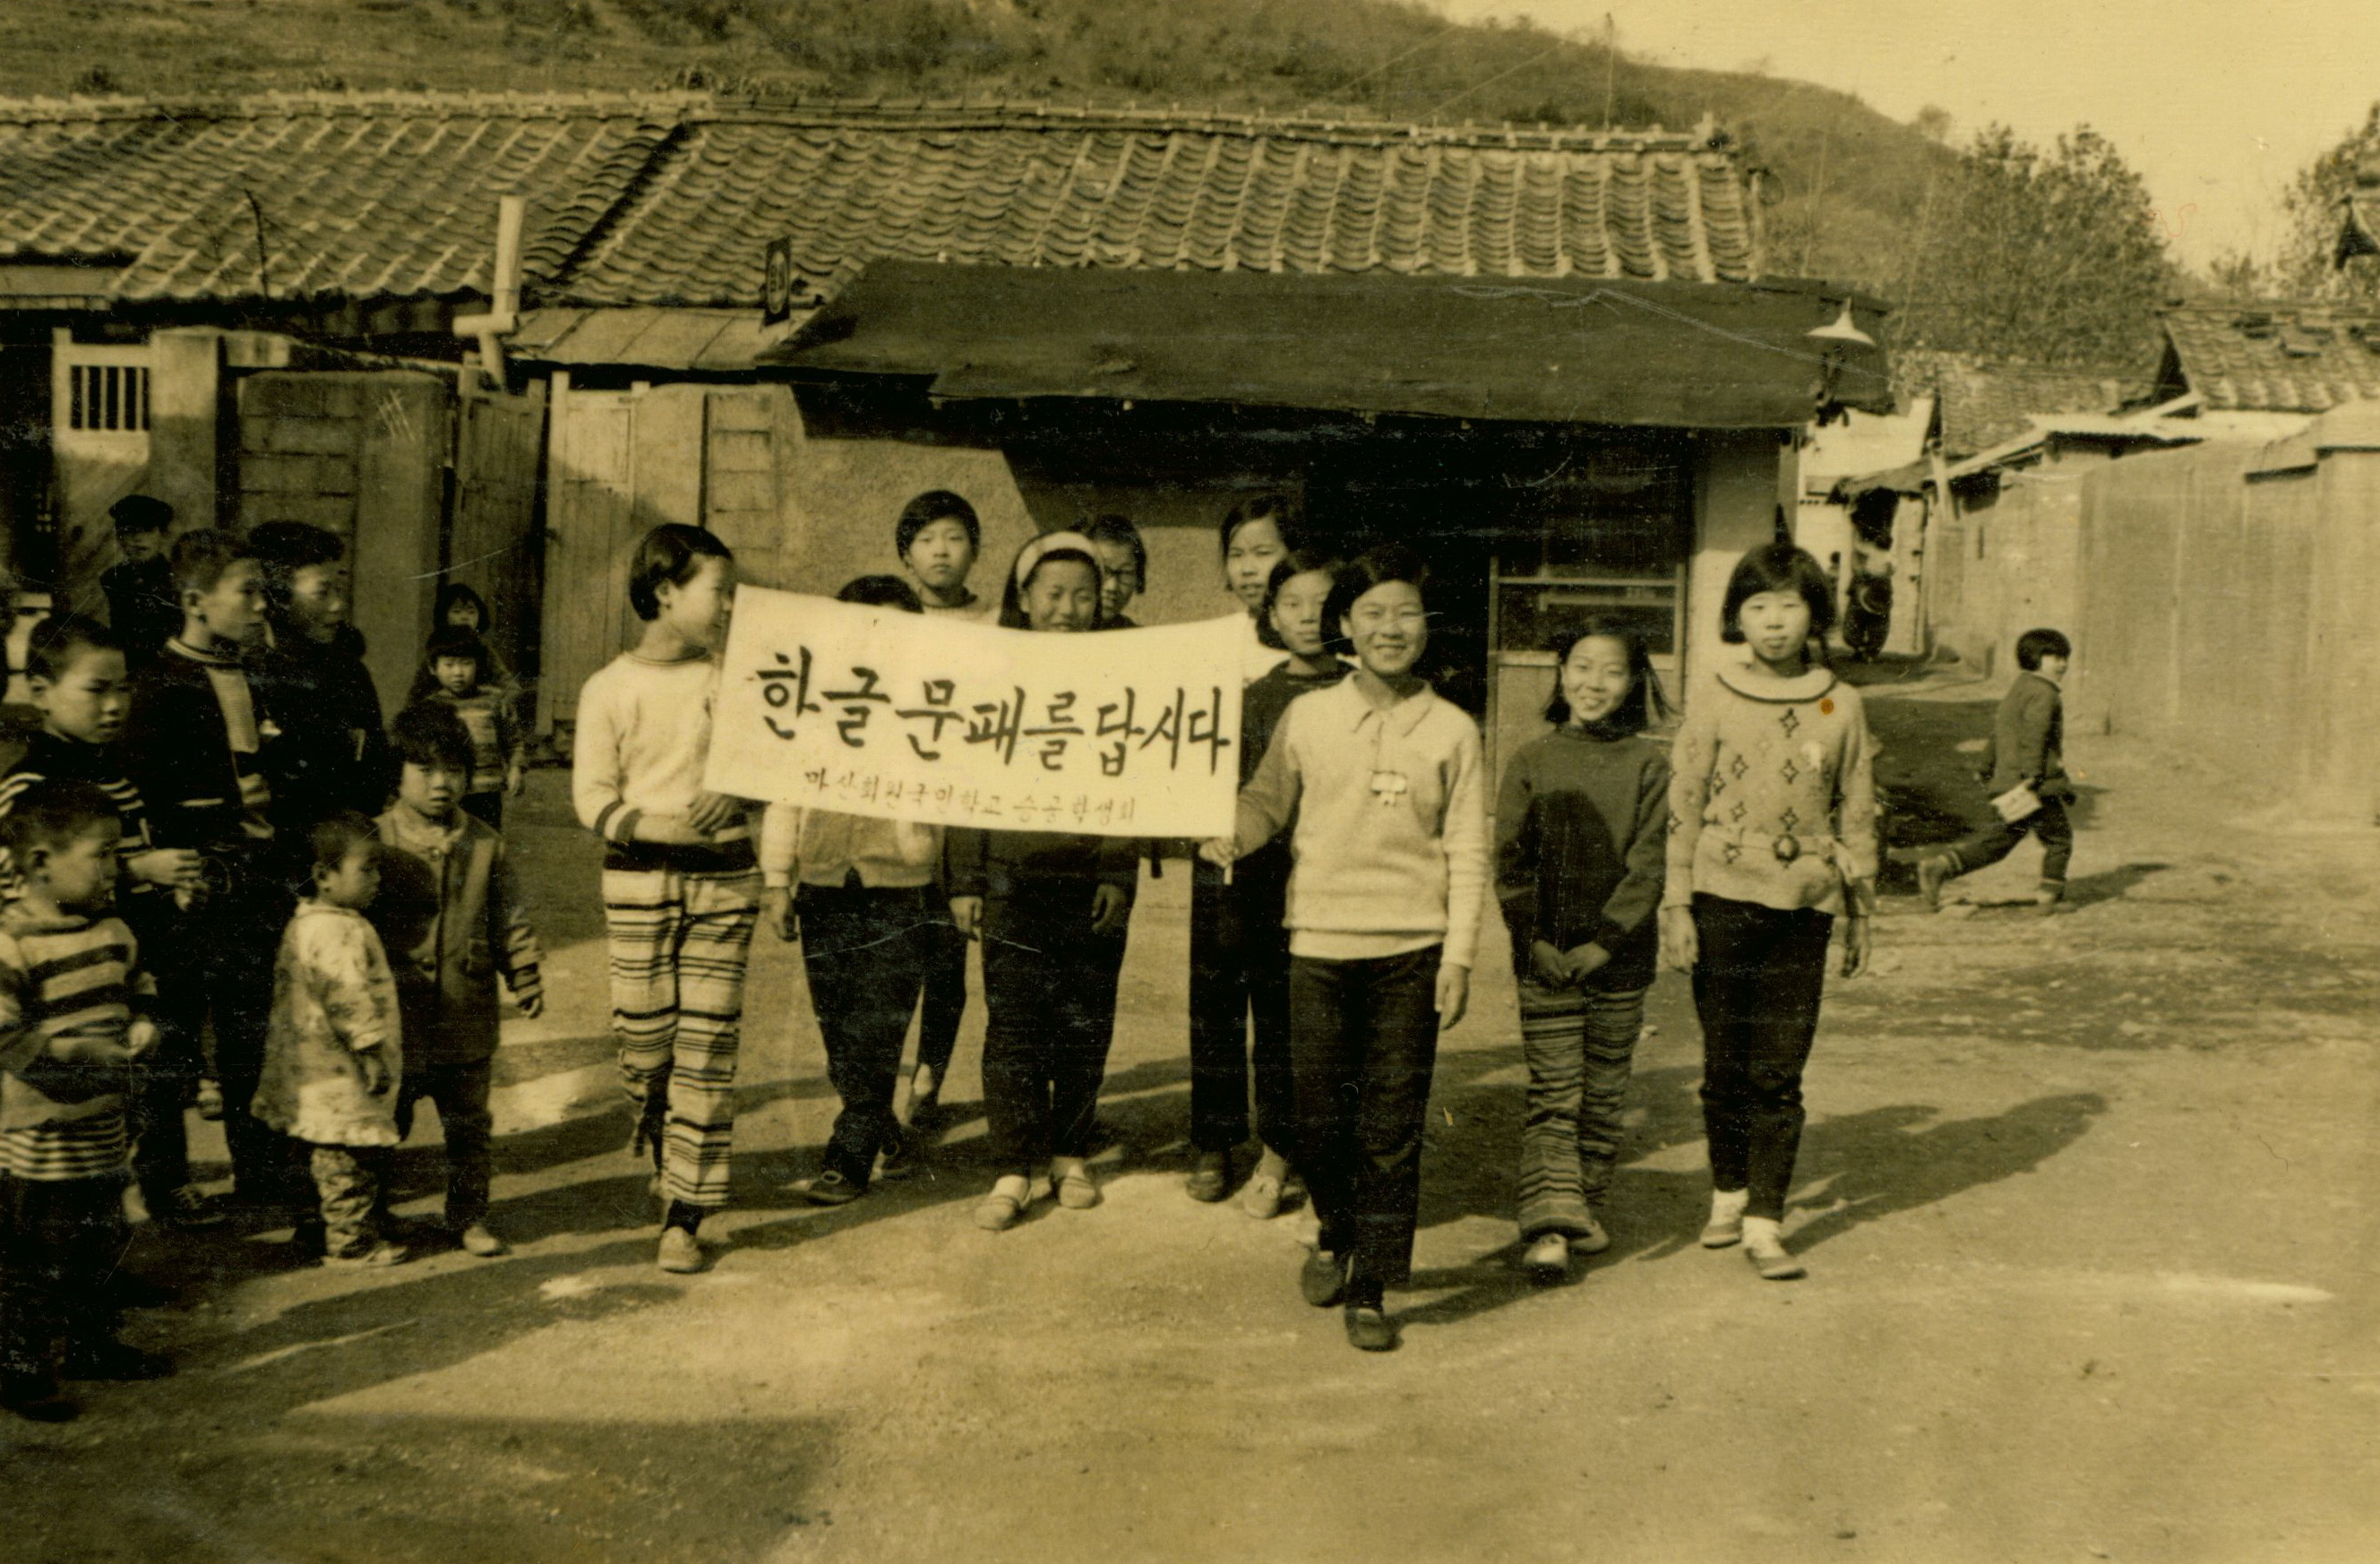 
															
															
																
																	회원초등학교 한글문패달기 계몽운동 - 1970년 [1번째 이미지]
																
																
															
														